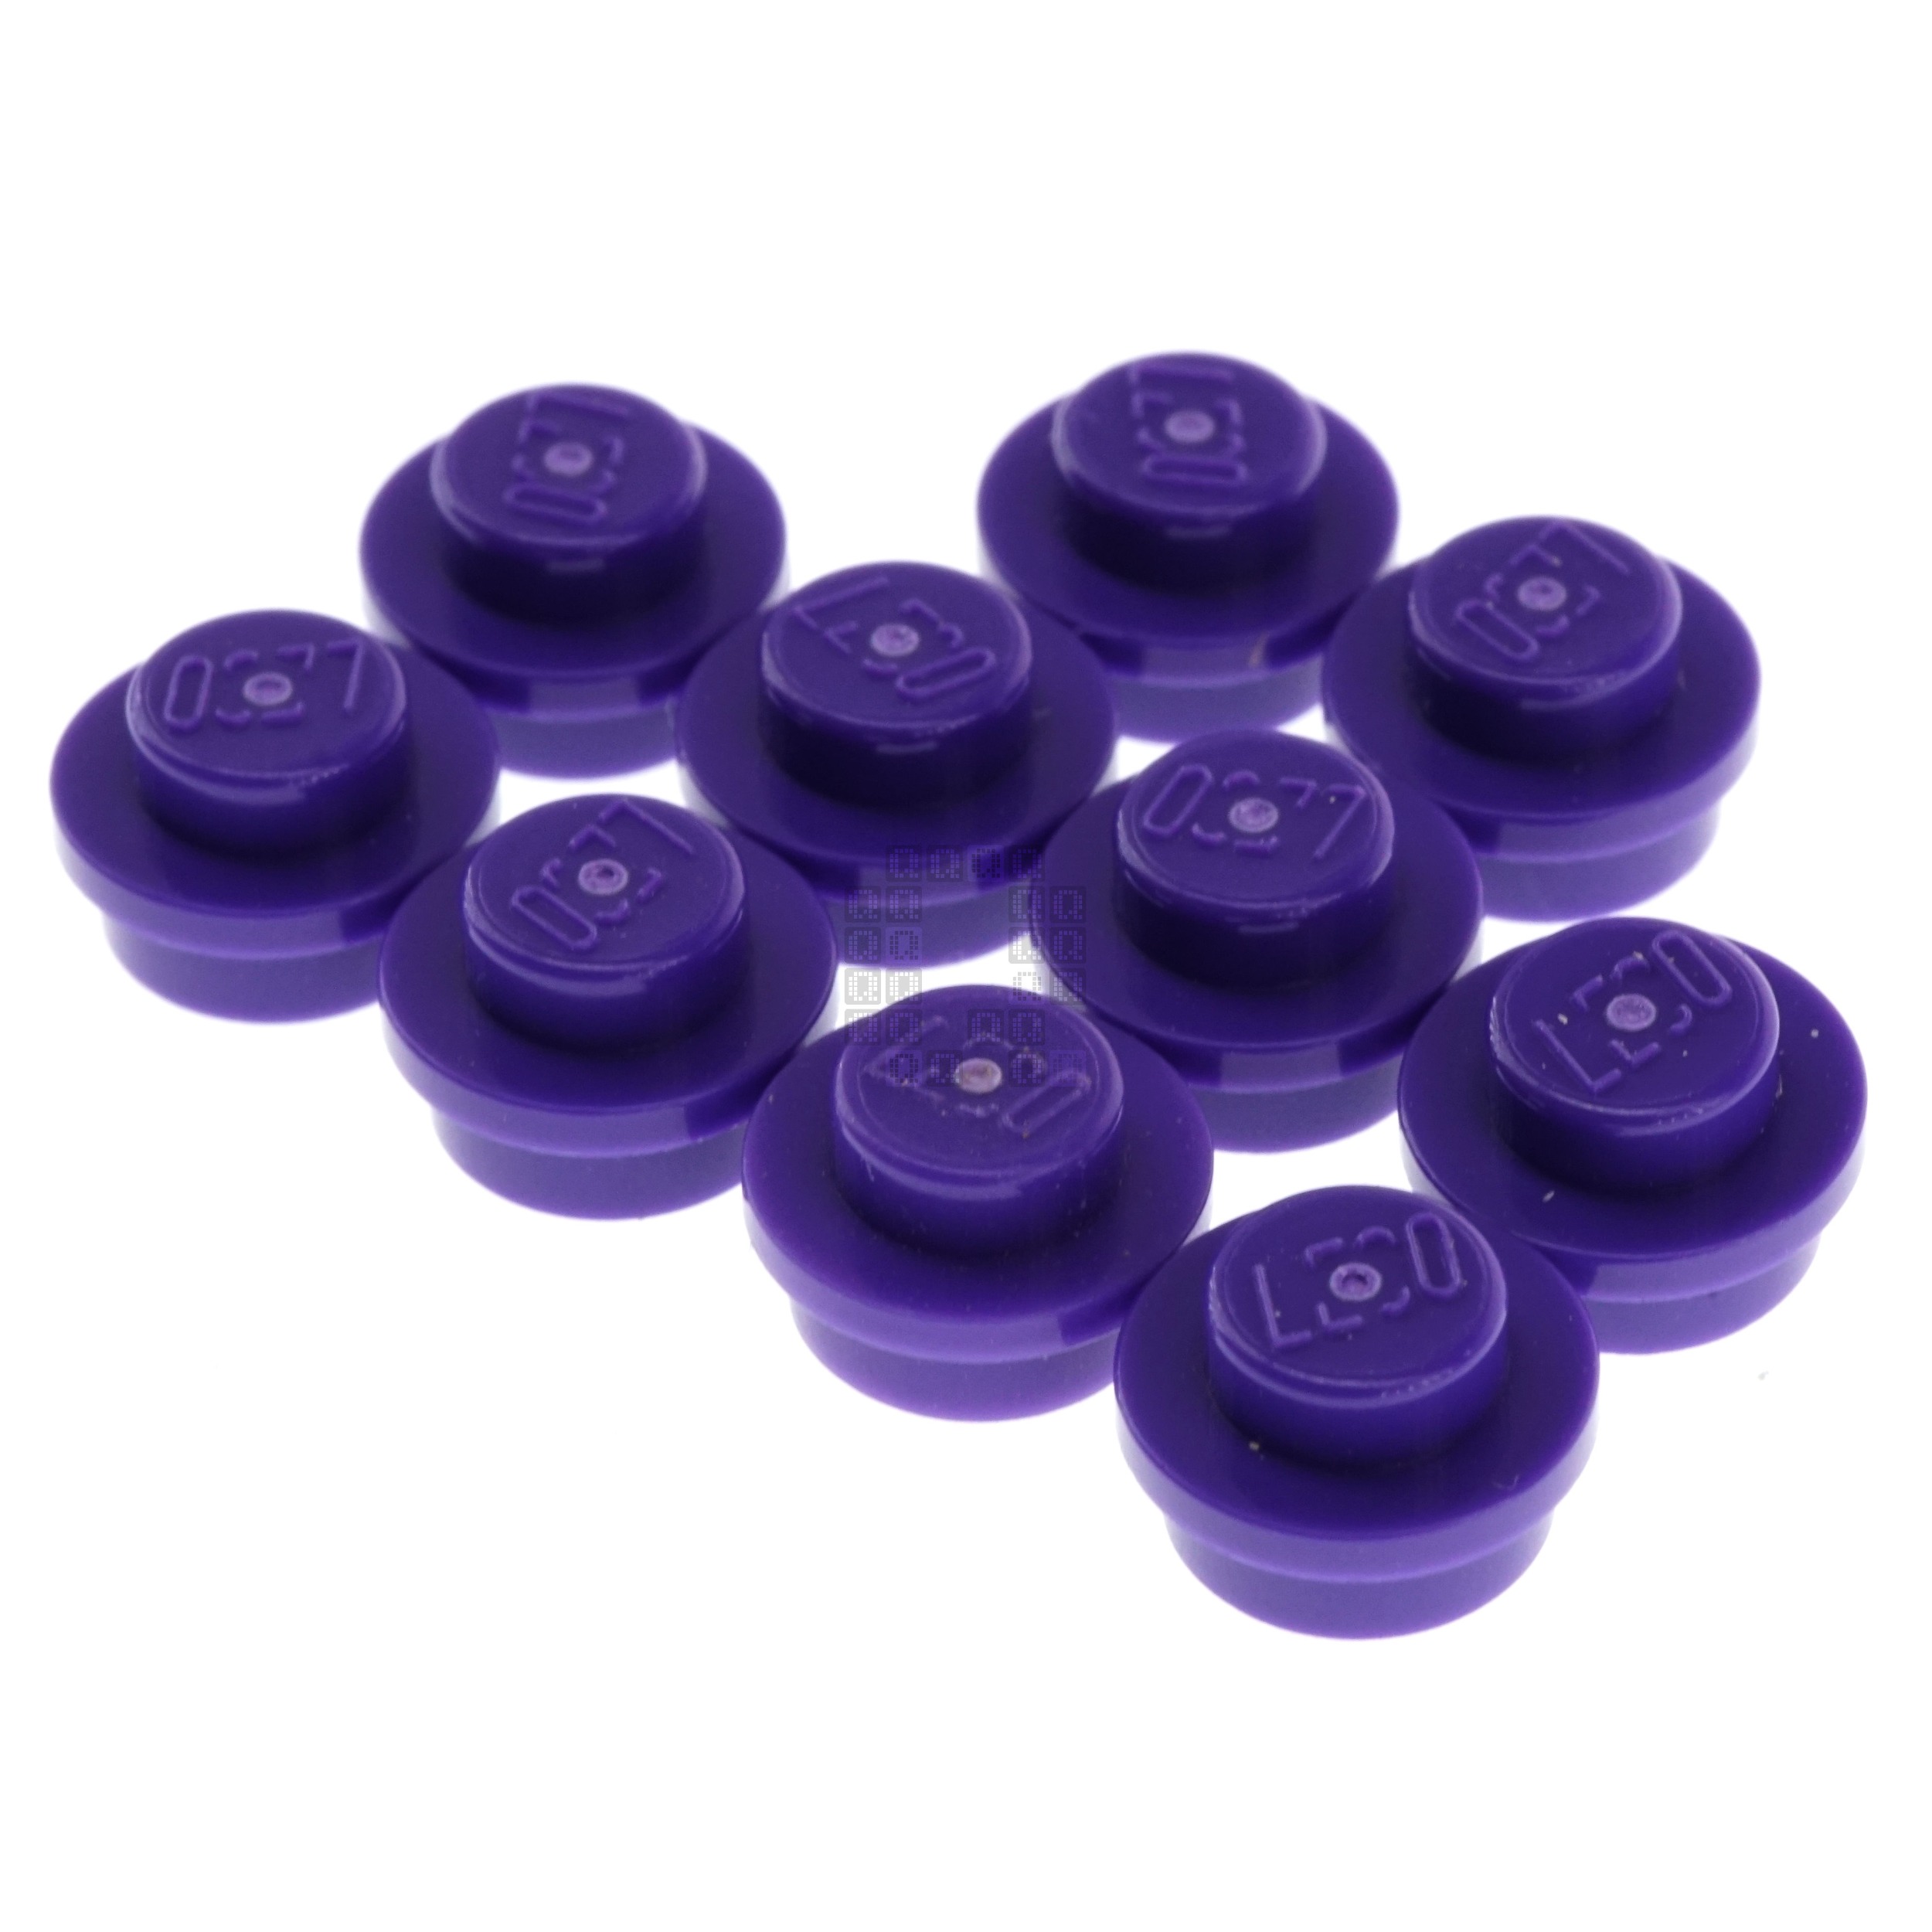 LEGO 4566522 1x1 Round Plate, Dark Purple , 10-Pack